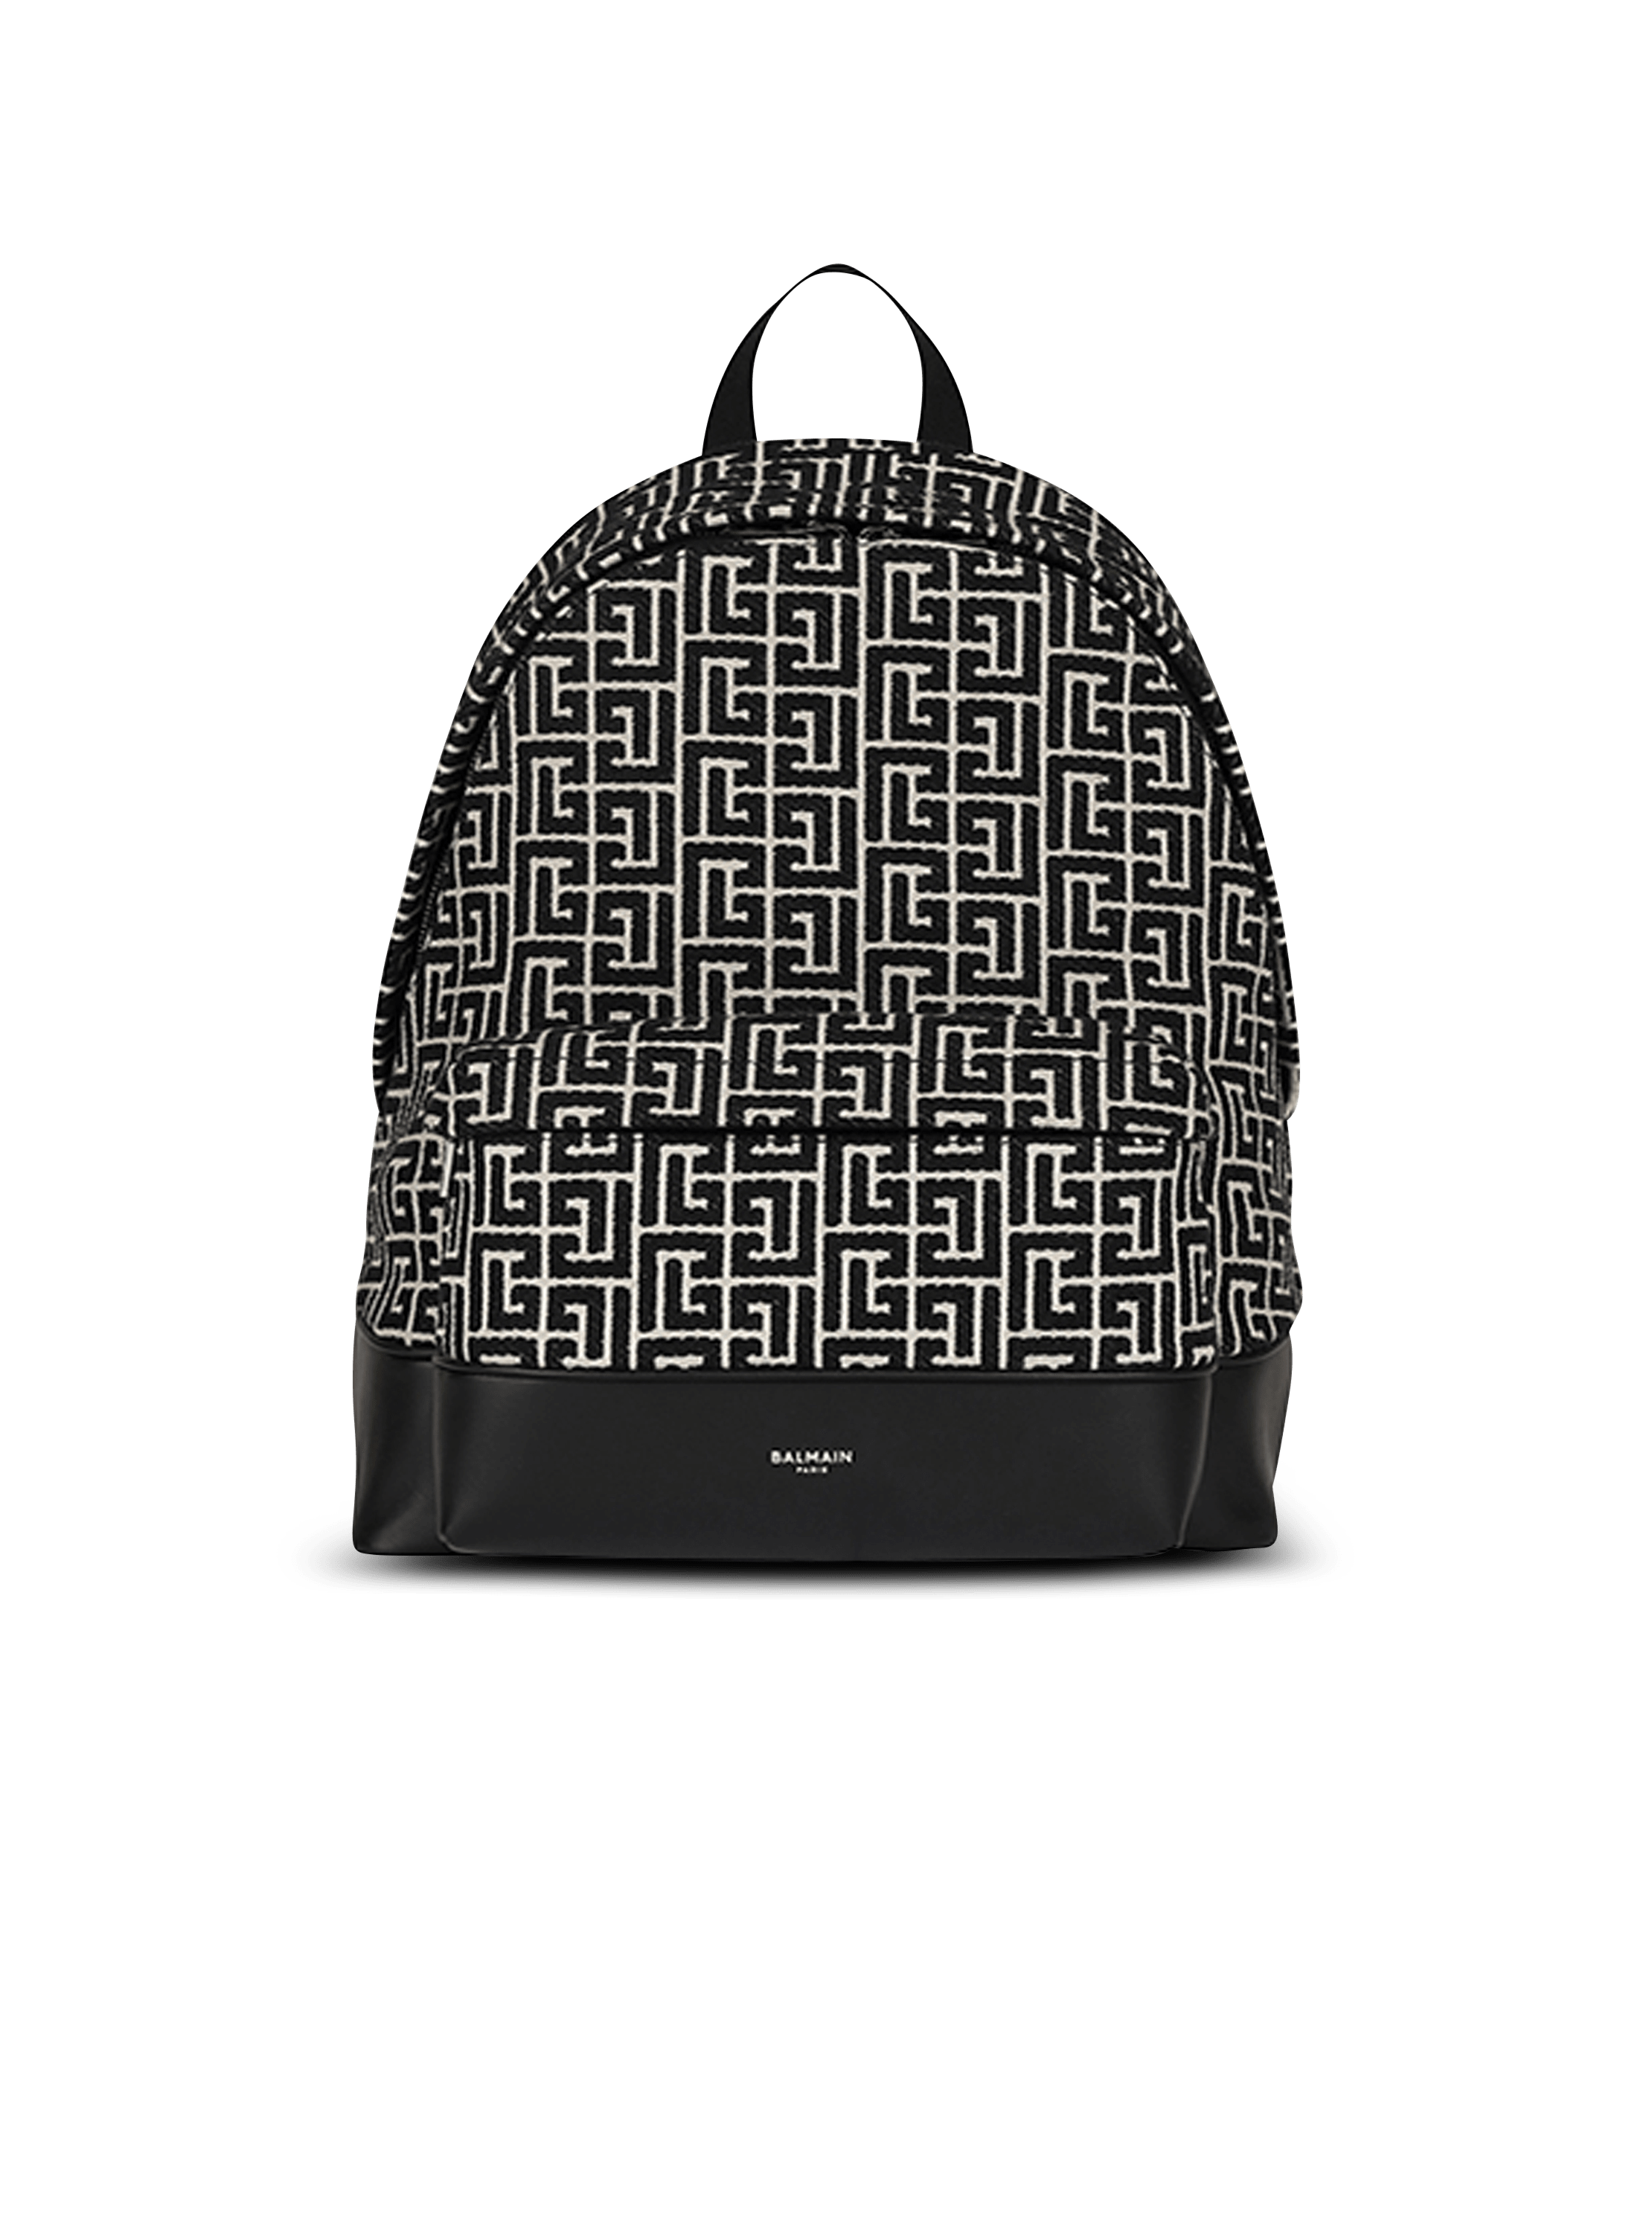 new backpack monogram